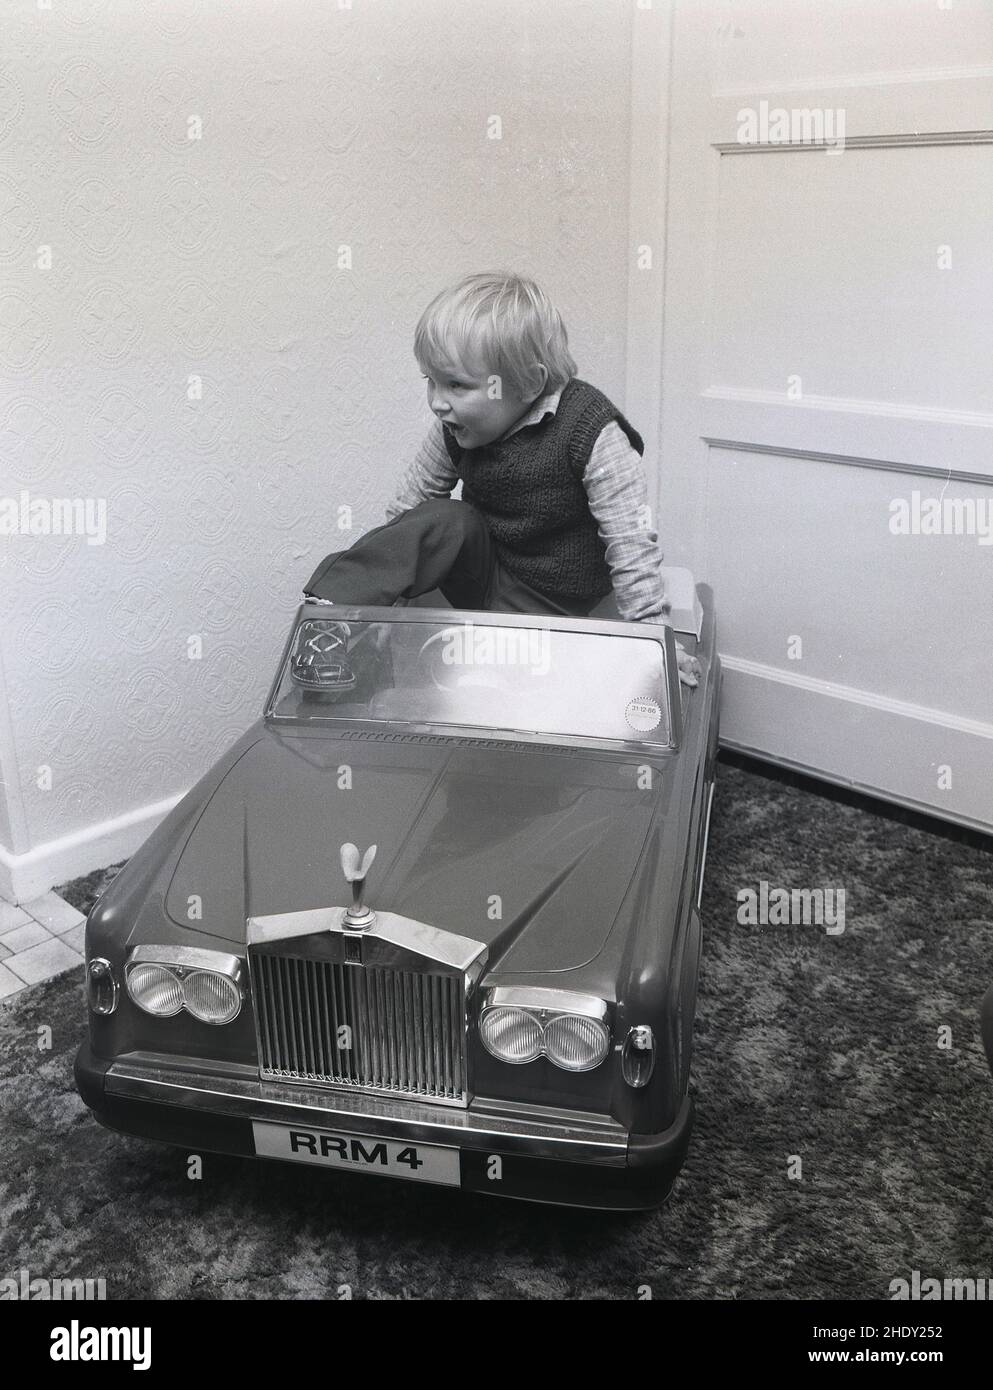 1980s, historique, à l'intérieur d'une chambre, un petit garçon grimpant dans le siège de sa voiture de jouet à bord, une Corniche Rolls Royce avec plaque personnalisée RRM 4, Angleterre, Royaume-Uni.Cette voiture à pédales classique pour enfant a été fabriquée par TRIANG, un grand fabricant de jouets britannique de l'époque.Il avait un corps en plastique moulé sur un cadre en acier et un moteur électrique.En tant que jeune garçon, le prince William lui avait donné un produit par Harrod's, le célèbre magasin de Knightsbridge à Londres qui les vendait à l'origine. Banque D'Images